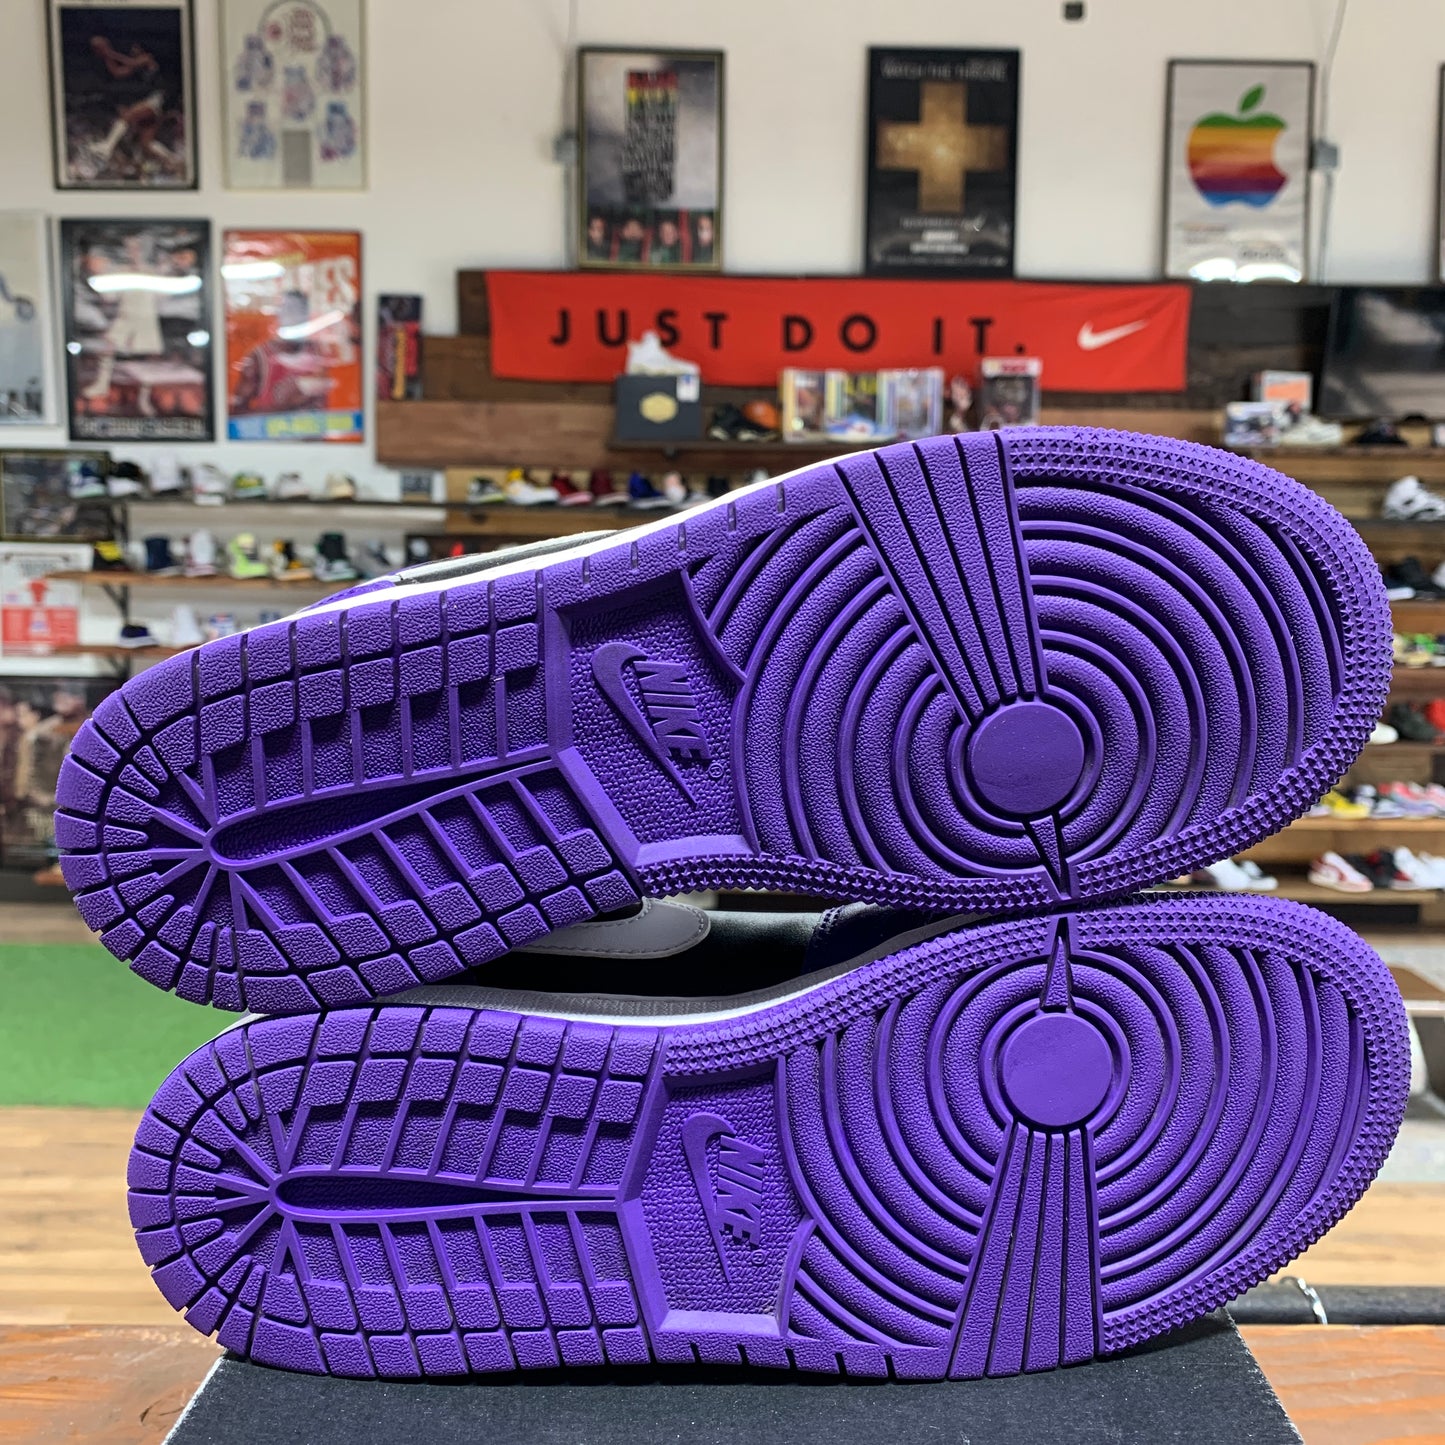 Jordan 1 Low 'Court Purple' Size 6.5Y